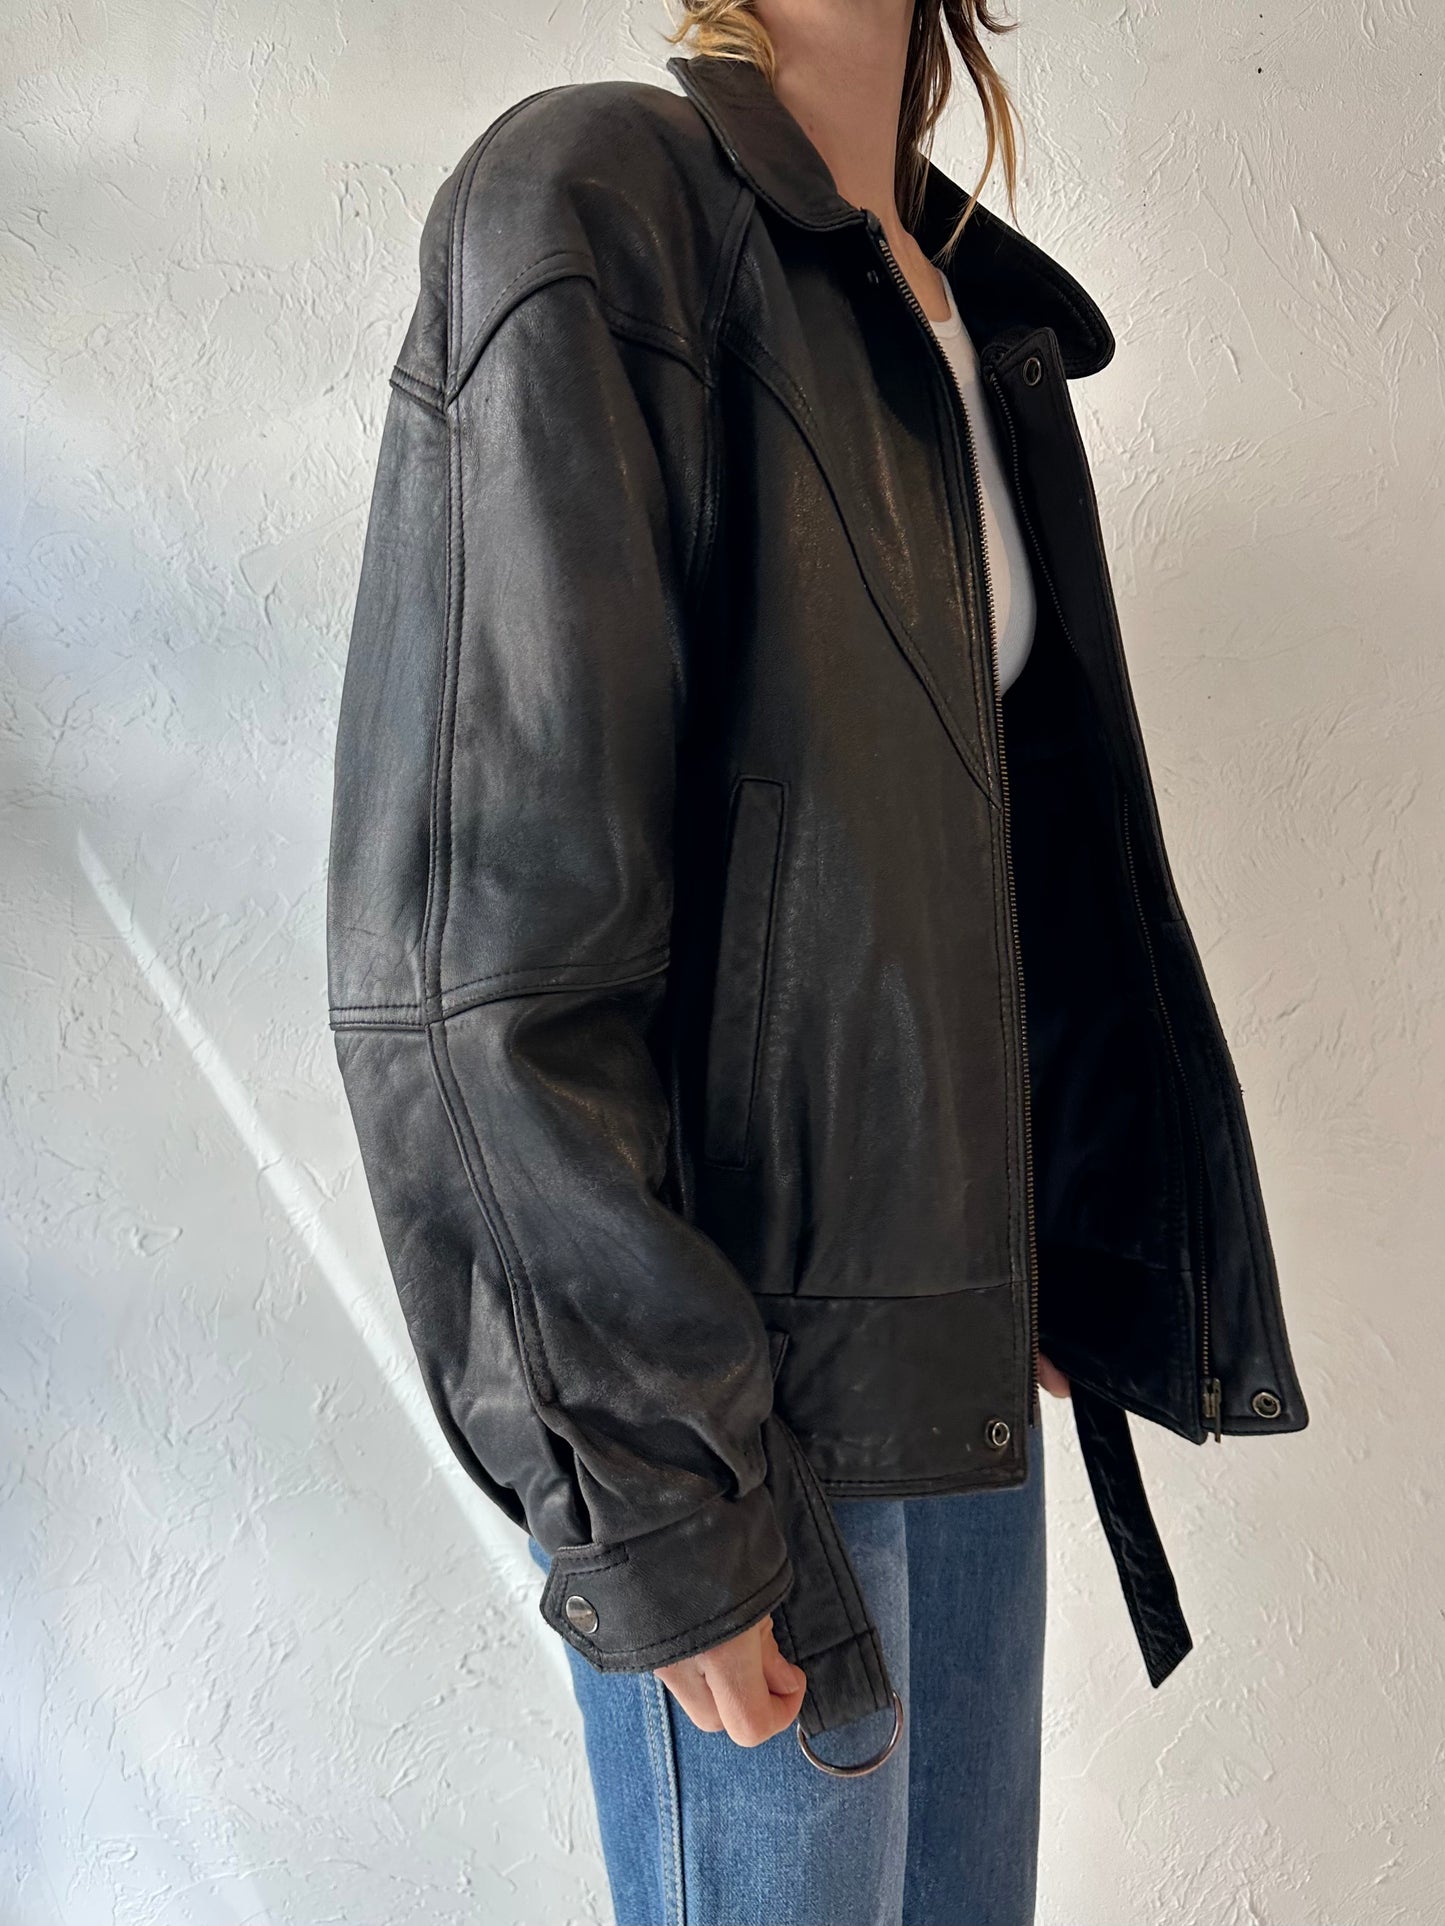 90s Black Leather Bomber Jacket / Medium